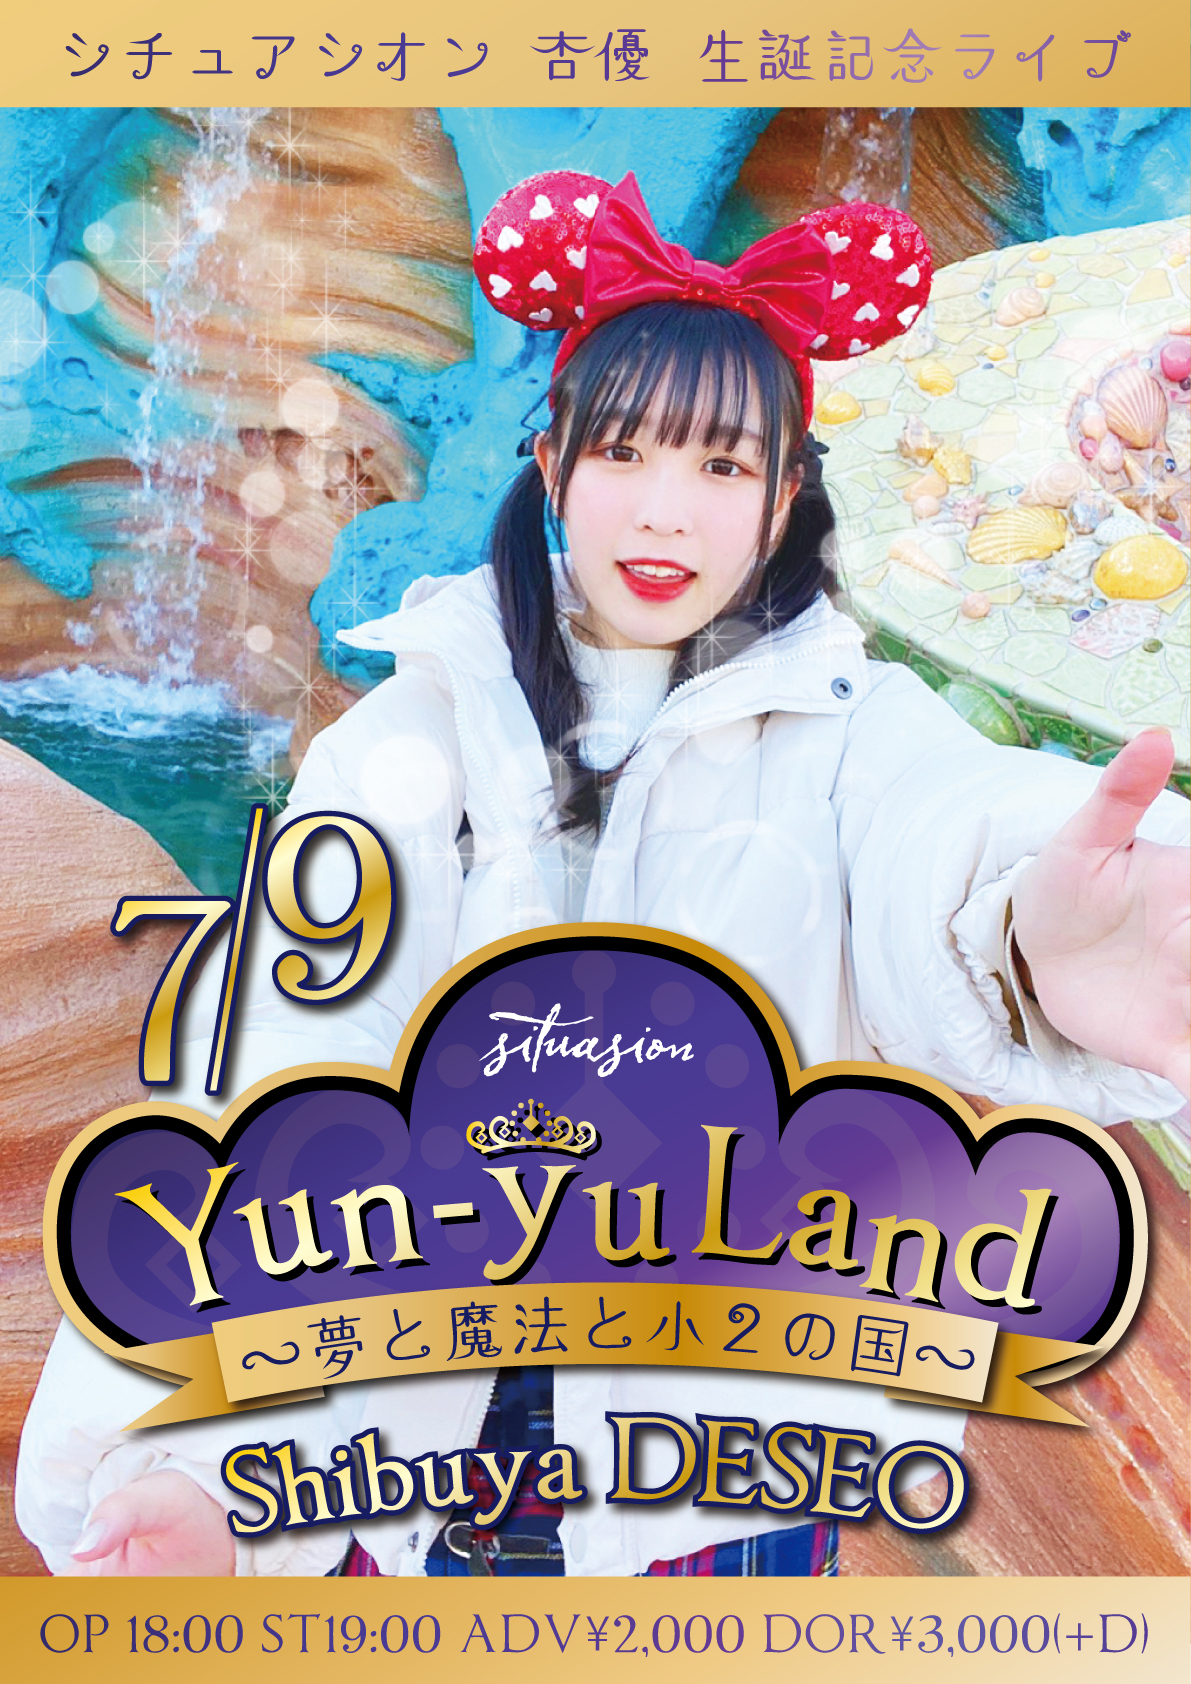 杏優 生誕記念ライブ「Yun-yu Land~夢と魔法と小2の国~」